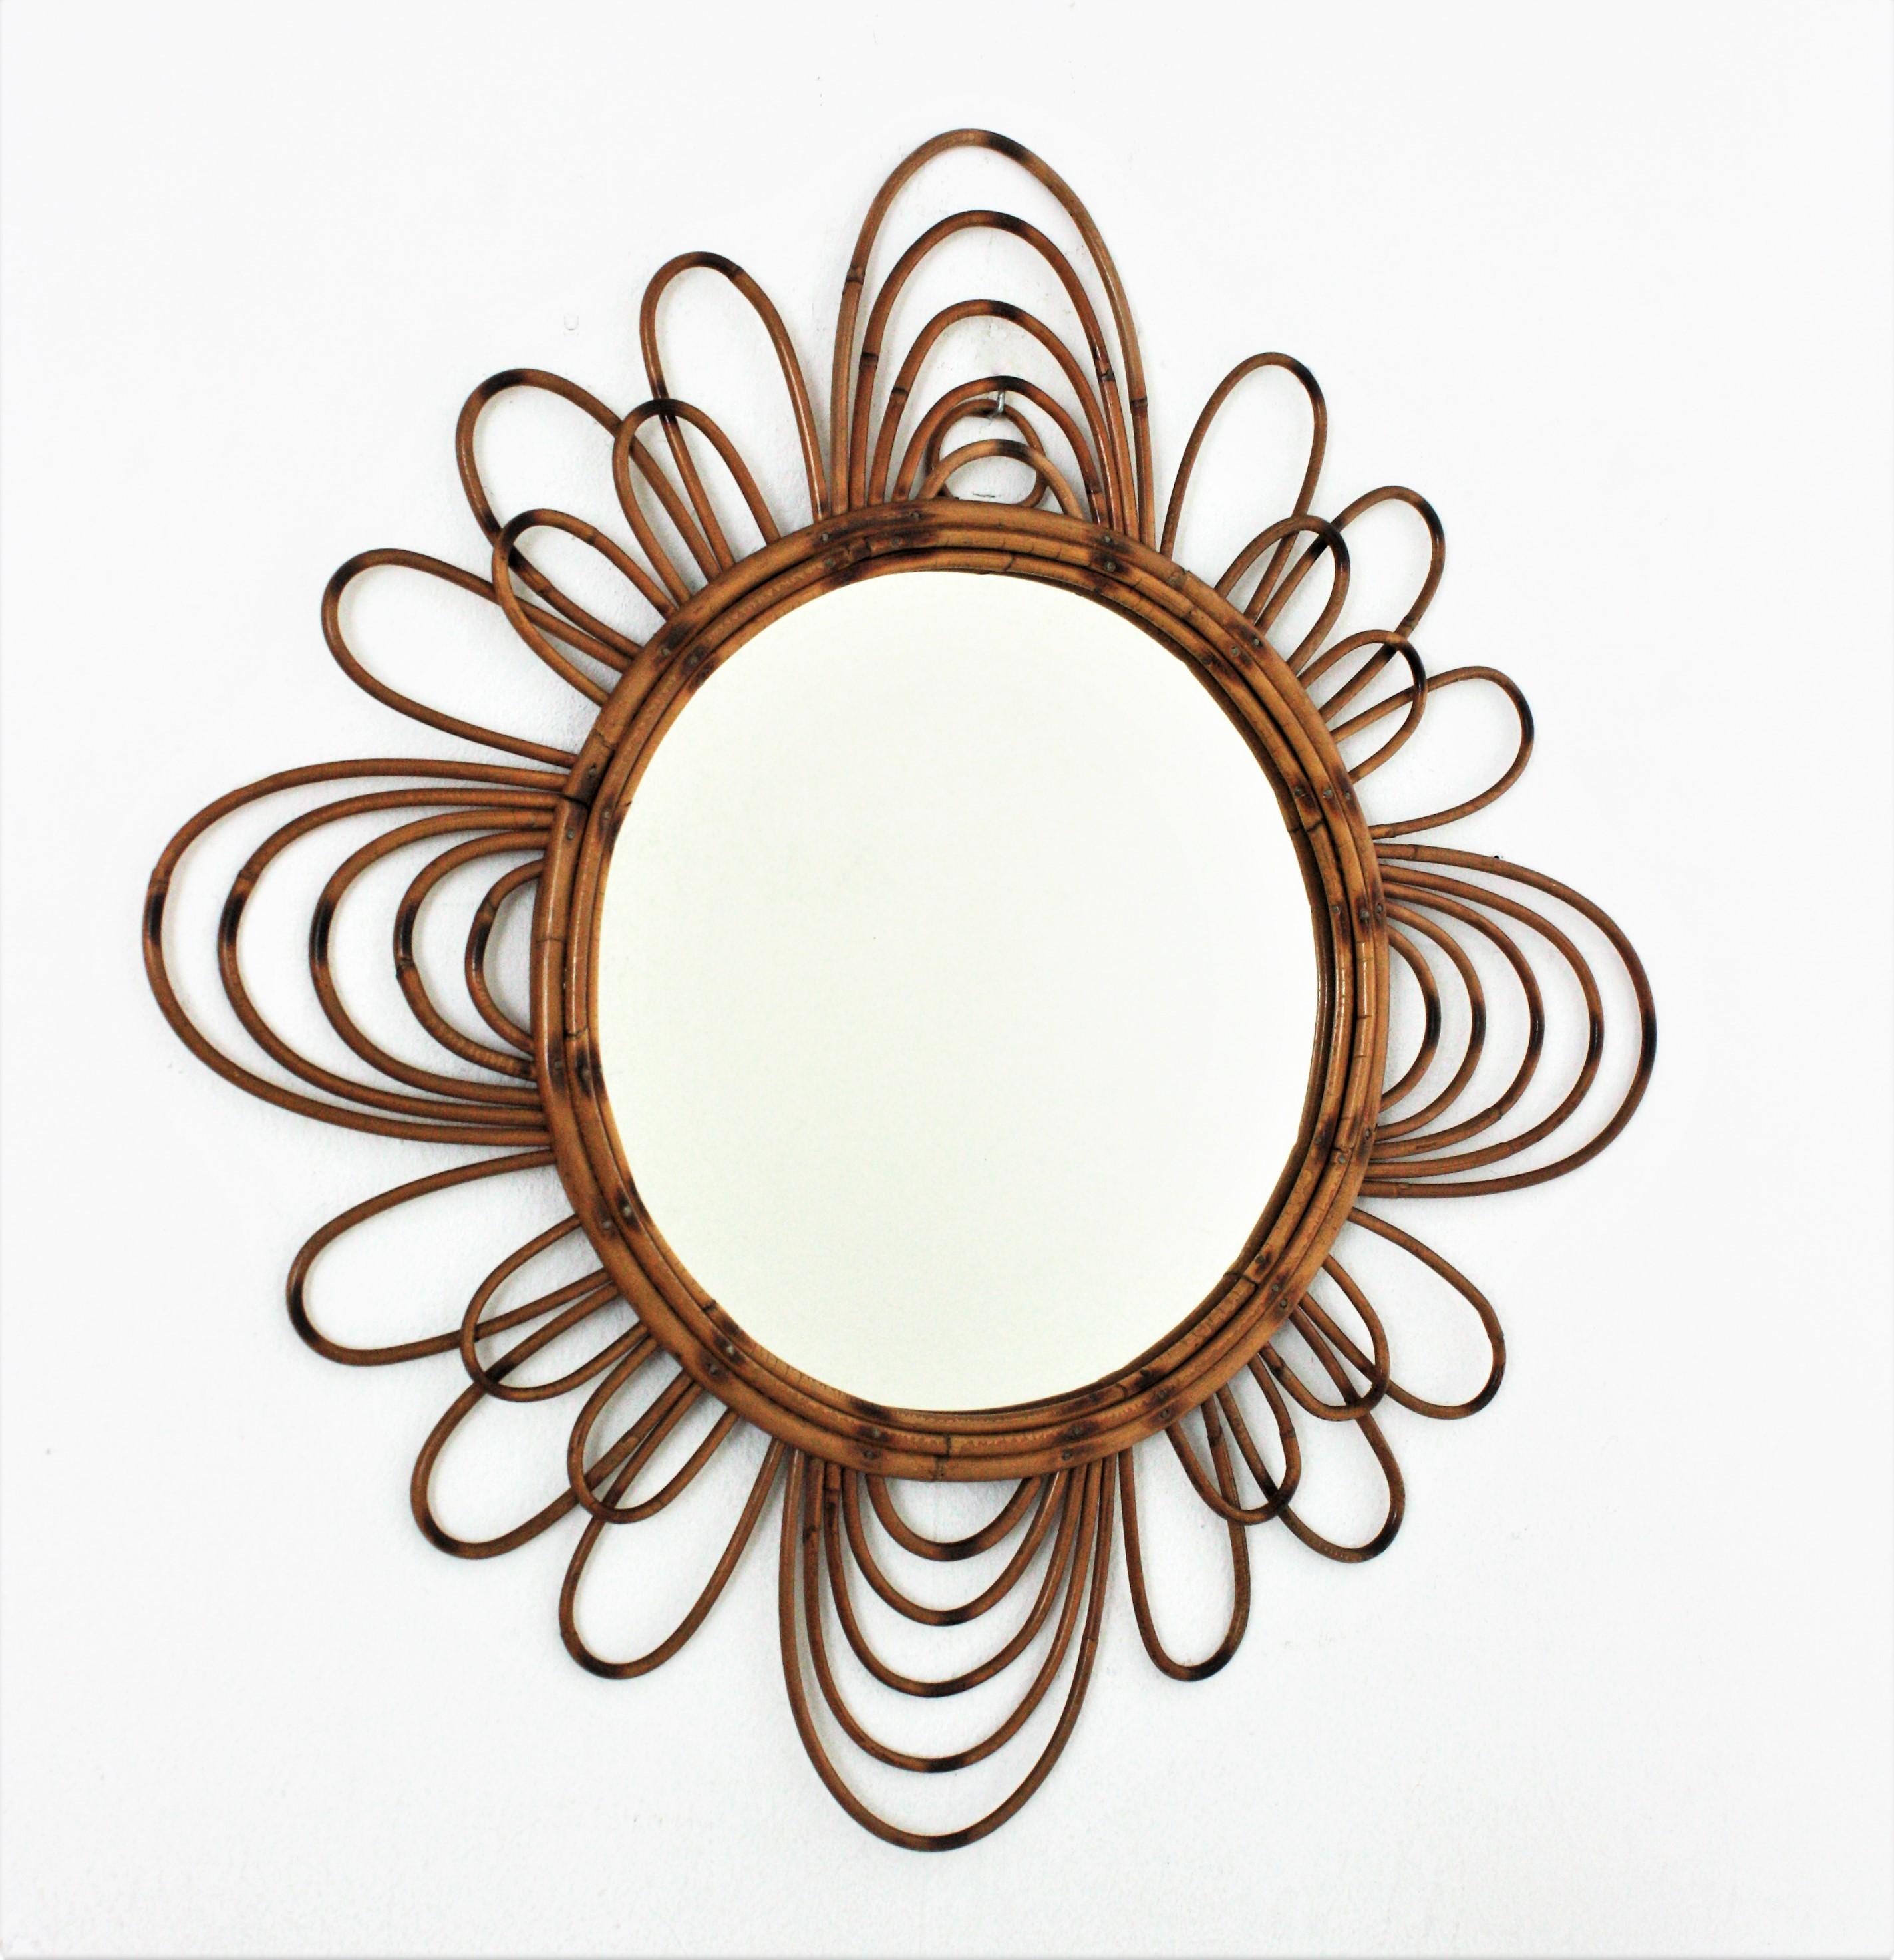 Flower Sunburst Spiegel aus Rattan, Frankreich, 1950-1960.
Ein cooler Mid-Century Modern handgefertigter Rattanspiegel mit Blumenform und dem ganzen Geschmack des mediterranen französischen Riviera-Stils.
Stellen Sie ihn allein oder als Teil einer